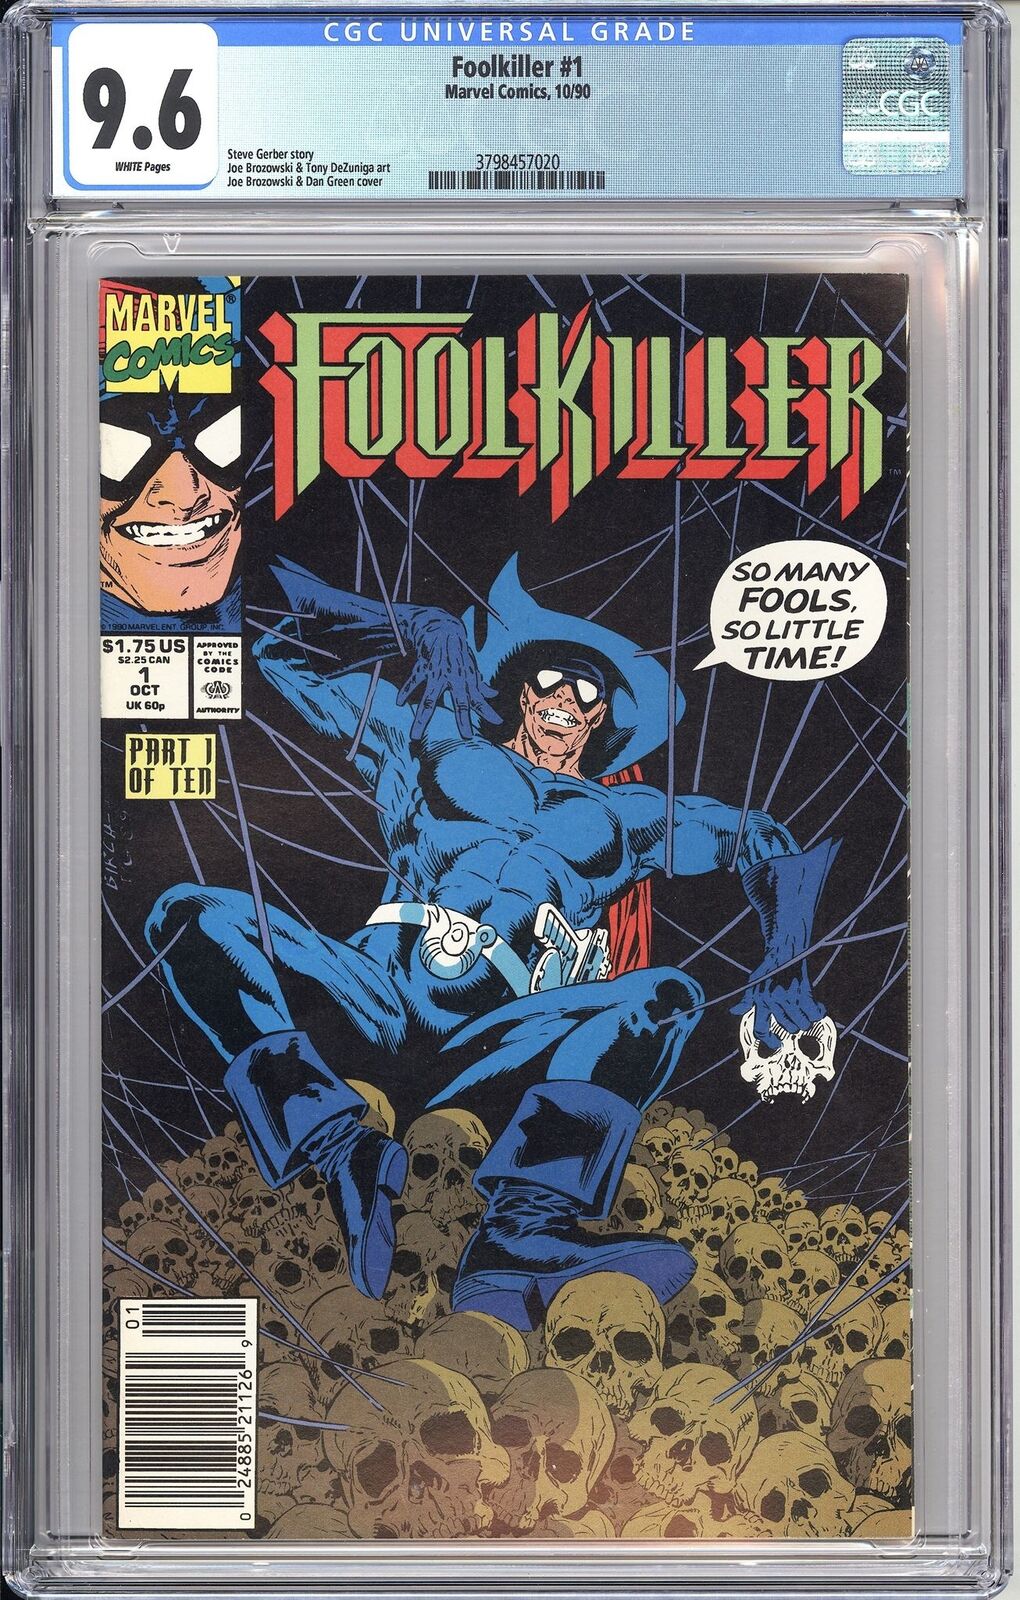 Foolkiller #1 CGC 9.6 1990 3798457020 Steve Gerber Newsstand Edition